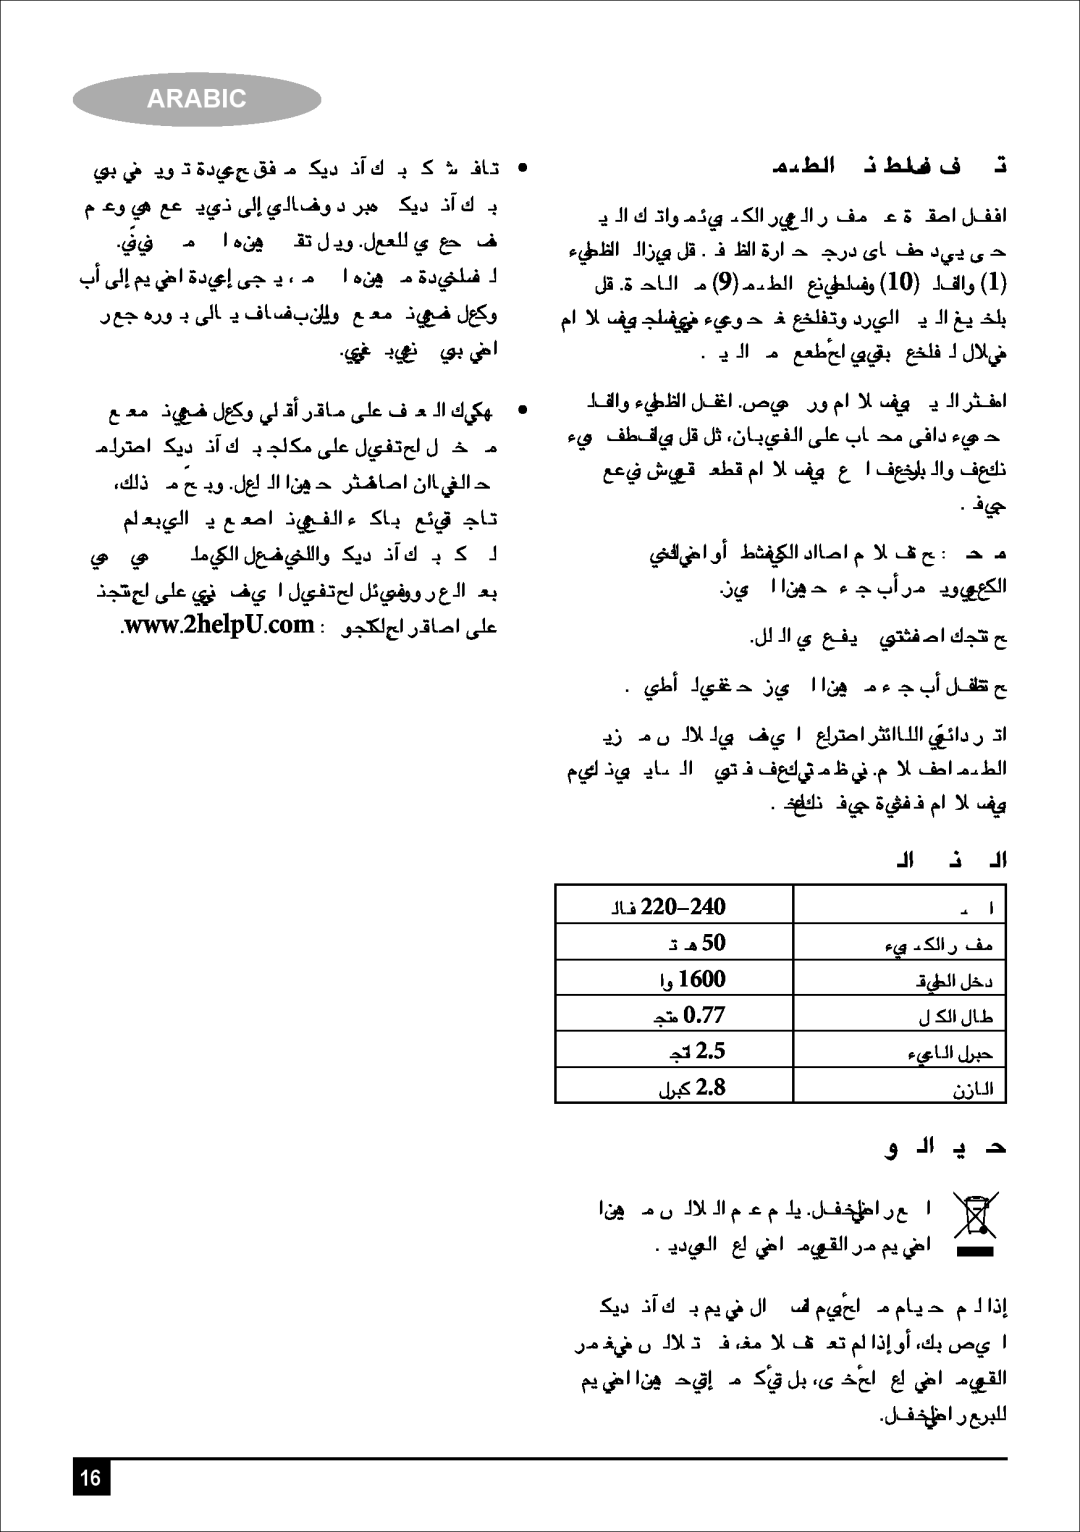 Black & Decker EF2500 manual áÄ«ÑdG ájÉªM, áaÉL, Arabic, »¡£dG á«fÉ£∏S ∞«¶æJ 